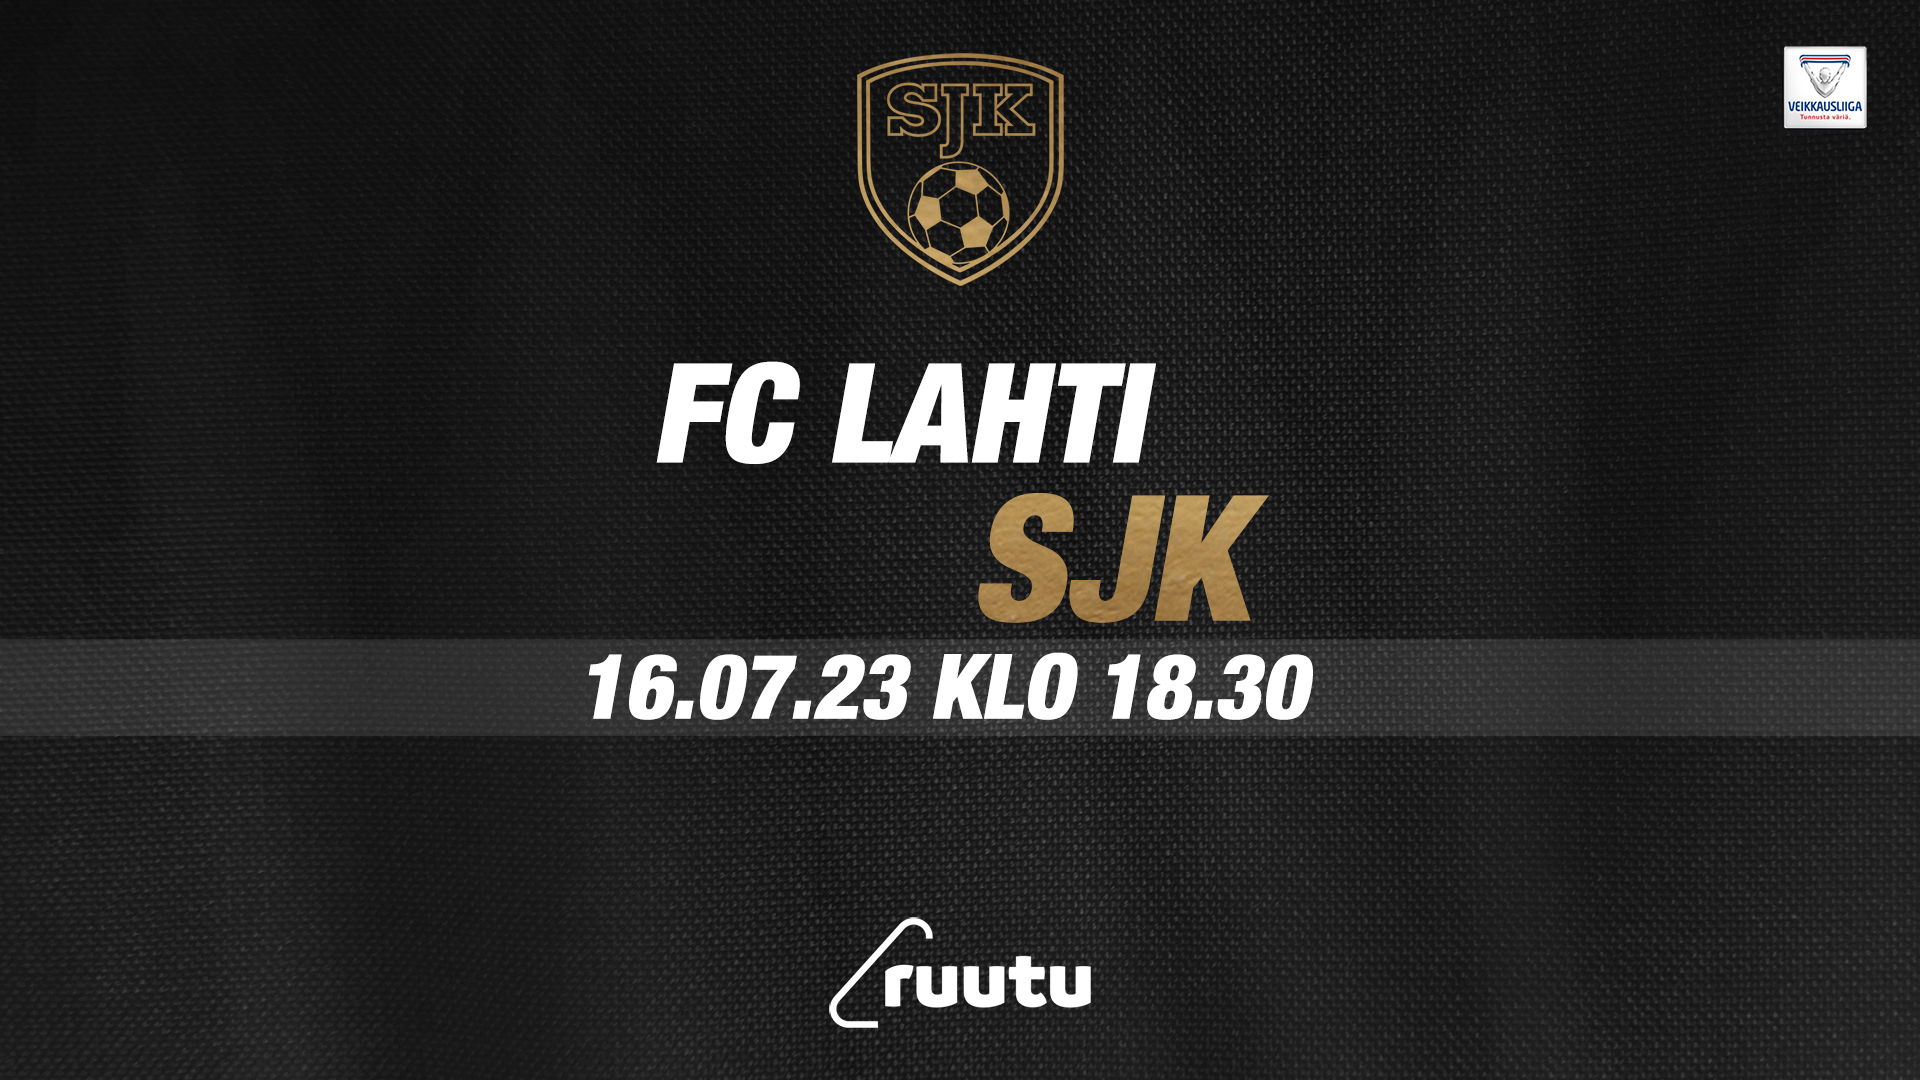 Veikkausliigassa sunnuntaina FC Lahti – SJK klo 18:30